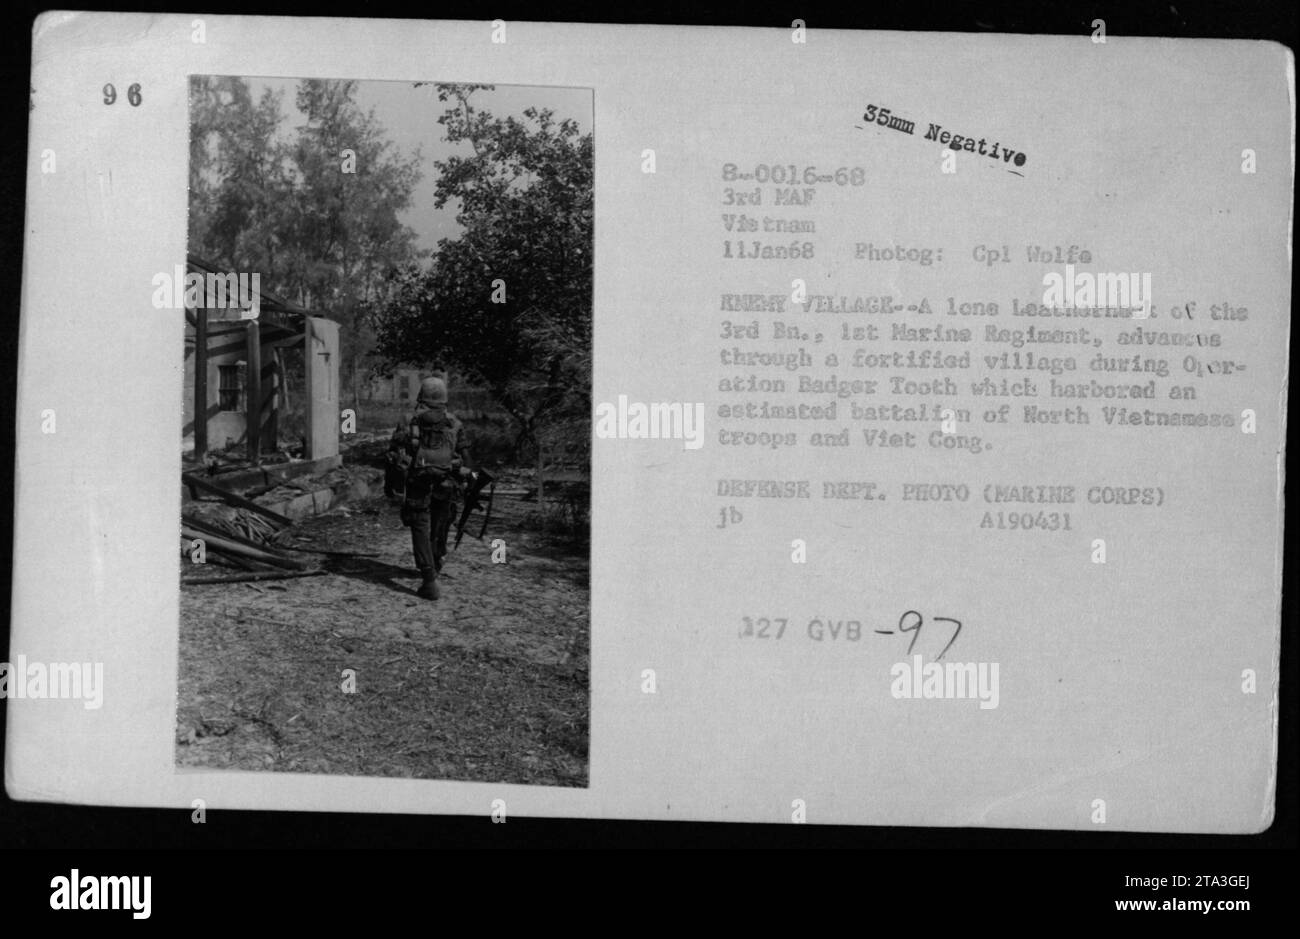 Ein einsamer US-Marine aus dem 3. Bataillon, 1. Marine-Regiment, durchquert ein befestigtes Dorf während der Operation Badger Tooth am 11. Januar 1968. Das Dorf beherbergte ein geschätztes Bataillon aus nordvietnamesischen Truppen und vietnamesischen Kämpfern. Dieses Foto ist Teil der 3rd Marine Amphibious Force (3rd MAF) Sammlung von Corporal Wolfo. Das Verteidigungsministerium (Marine Corps) Foto A190431. Stockfoto